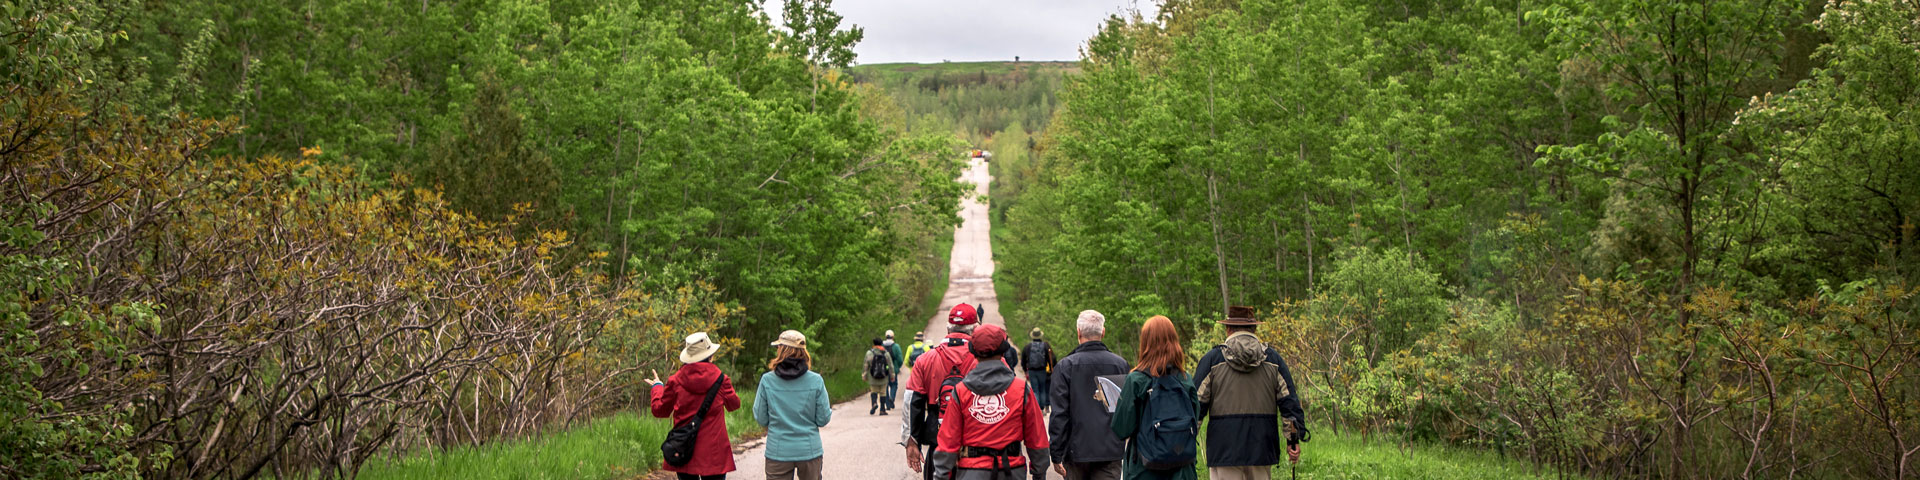 Les participants à la promenade guidée parcourent un sentier à travers une forêt verdoyante